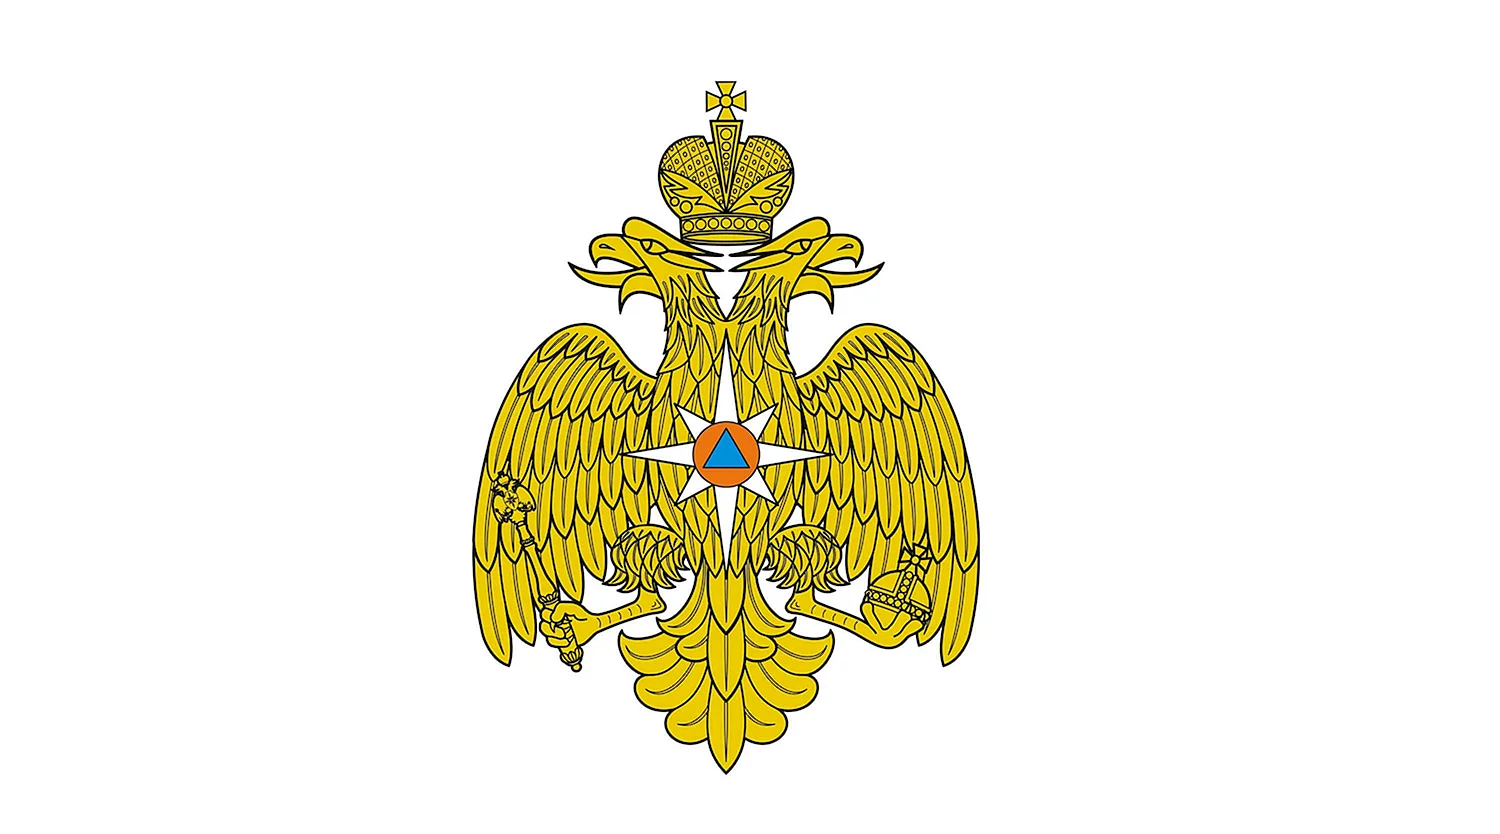 Средняя эмблема МЧС России